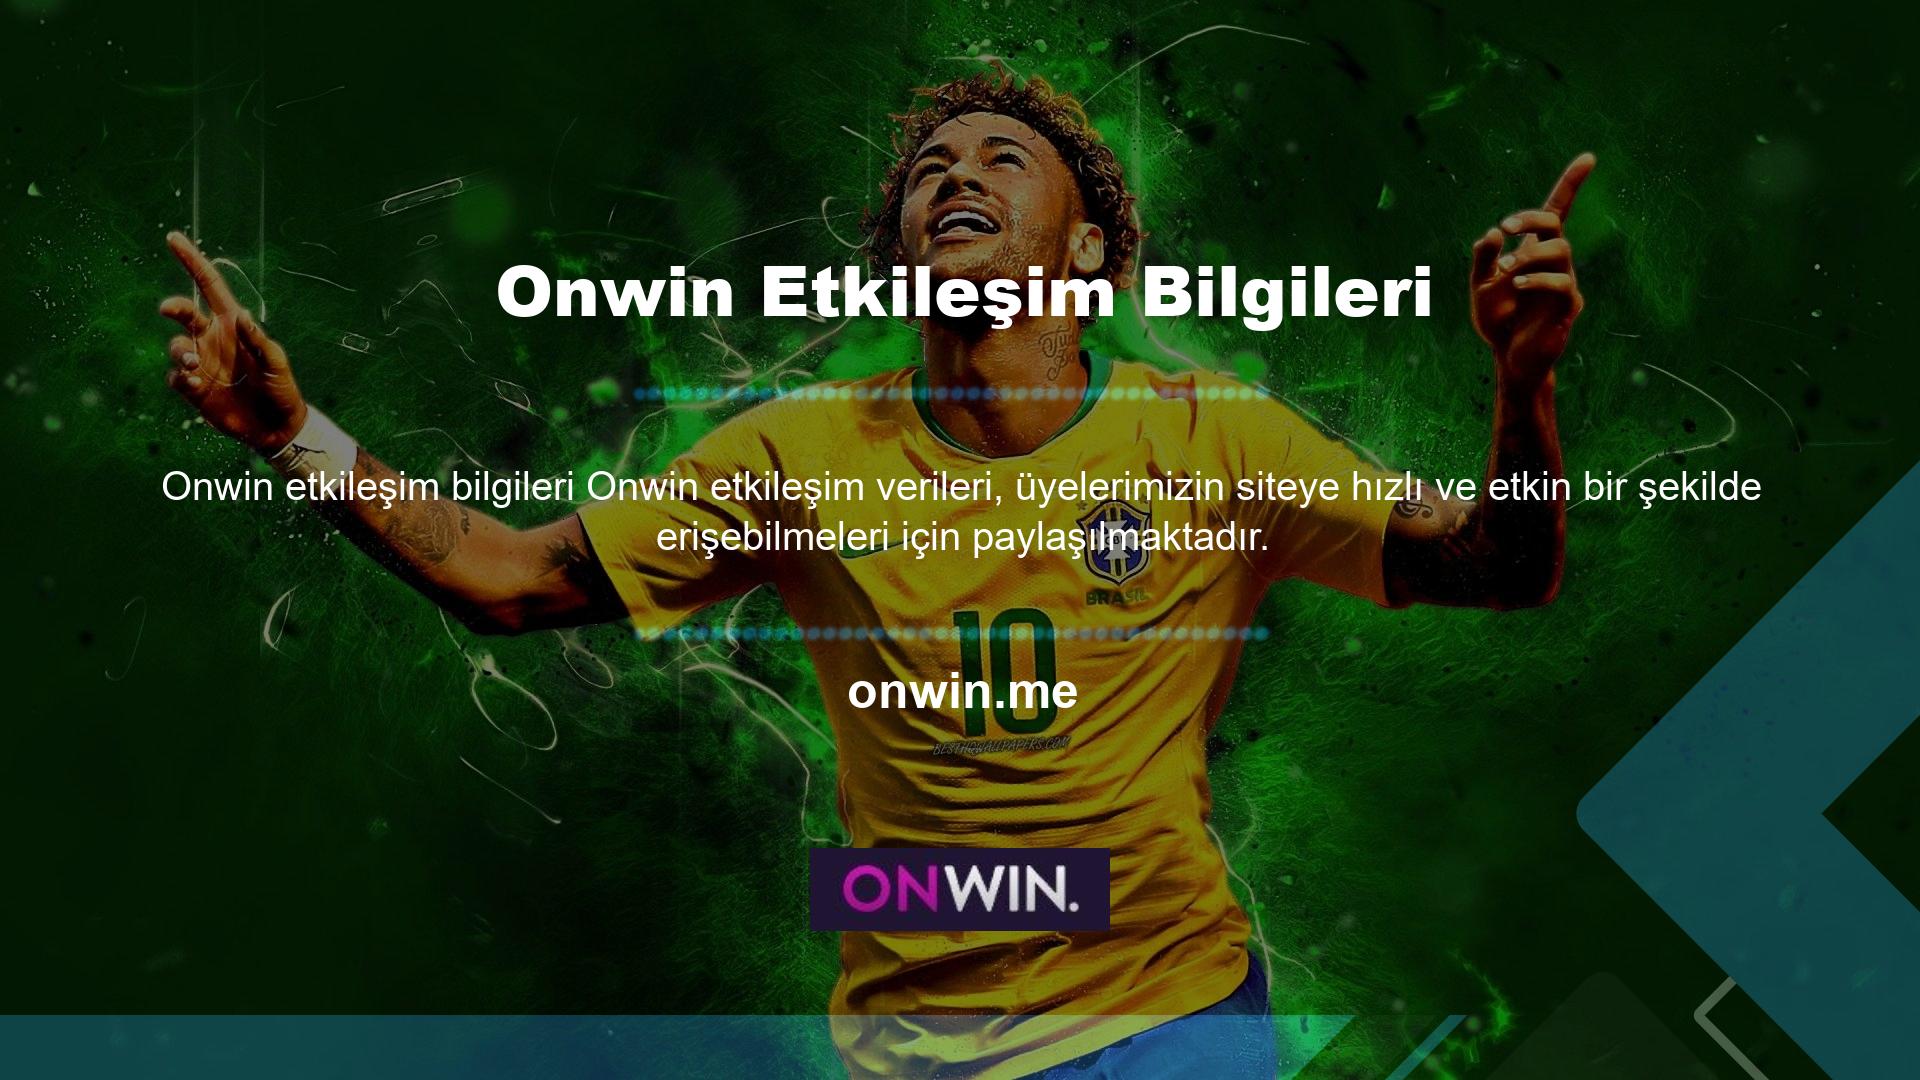 Kolayca tanımlanabilen canlı bahis siteleri, Onwin canlı destek programı aracılığıyla çevrimiçi müşteri desteği sunabilir